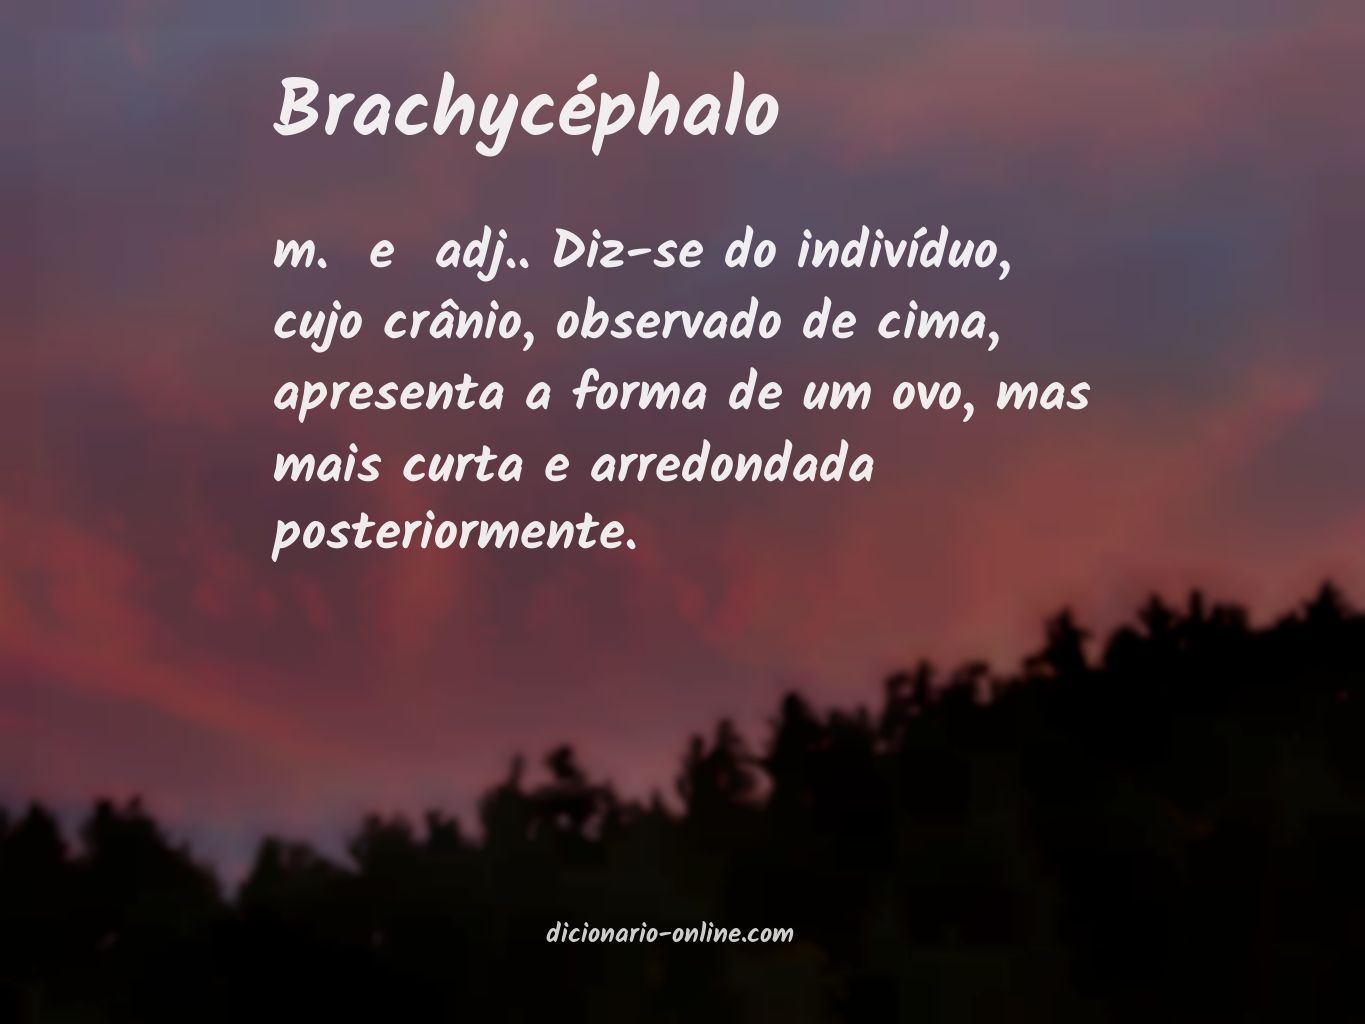 Significado de brachycéphalo